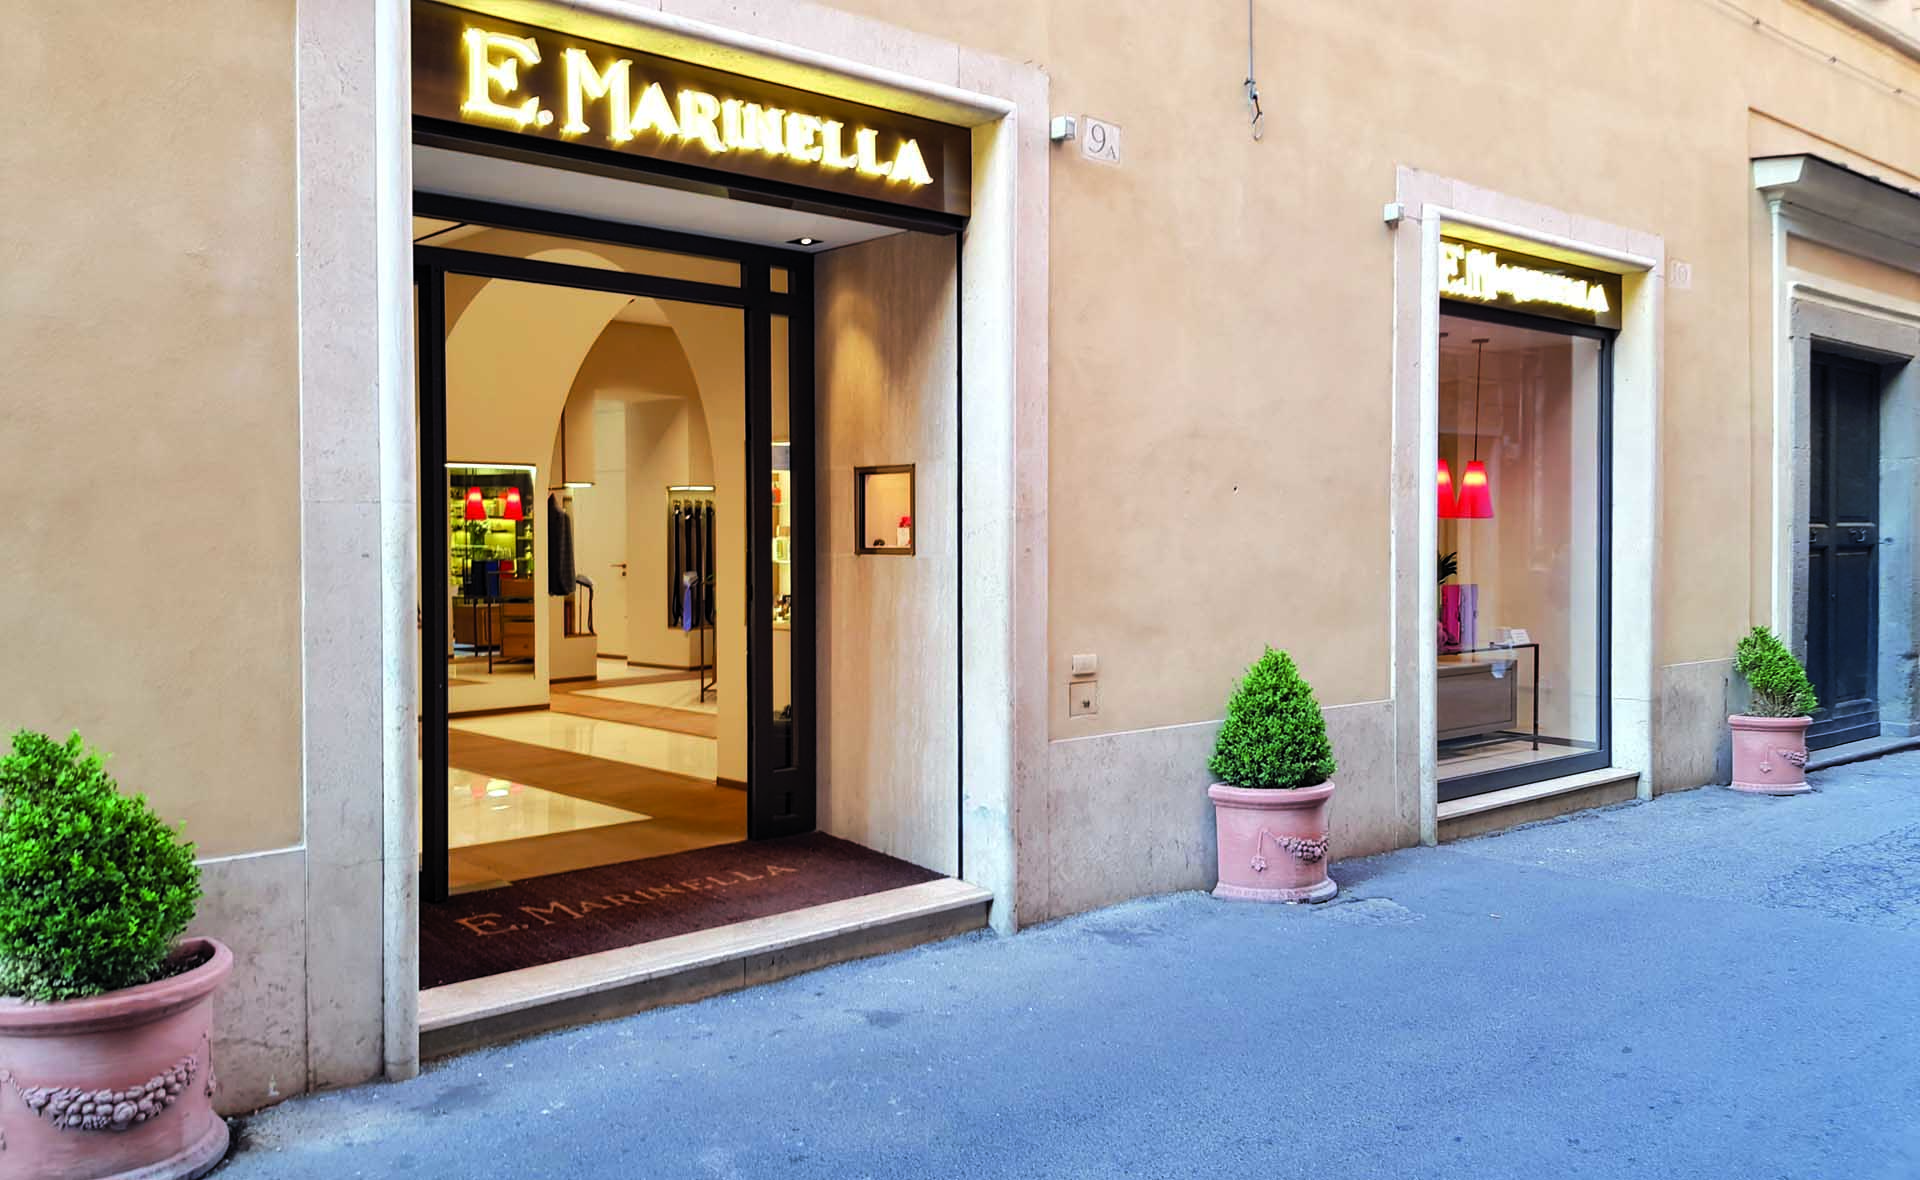 La cravatte Marinella e la nuova boutique di Roma.